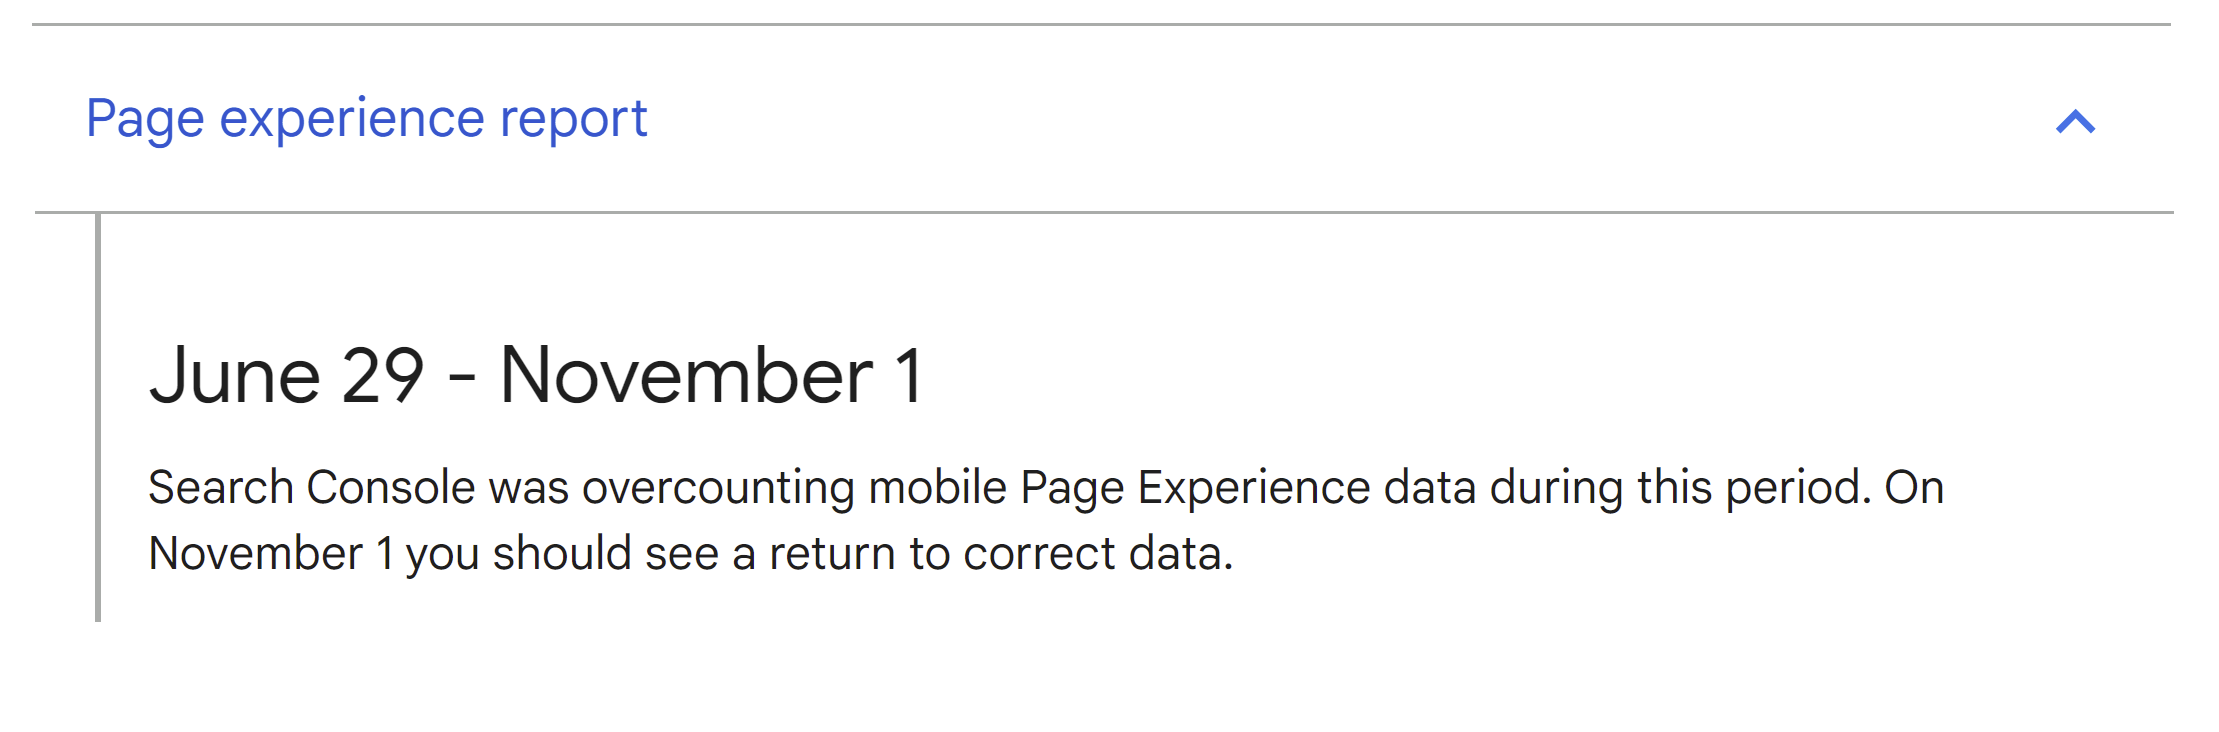 Google Data Anomalies: fehlerhafte Daten zur mobilen Page Experience für den Zeitraum 29. Juni bis 1. November möglich